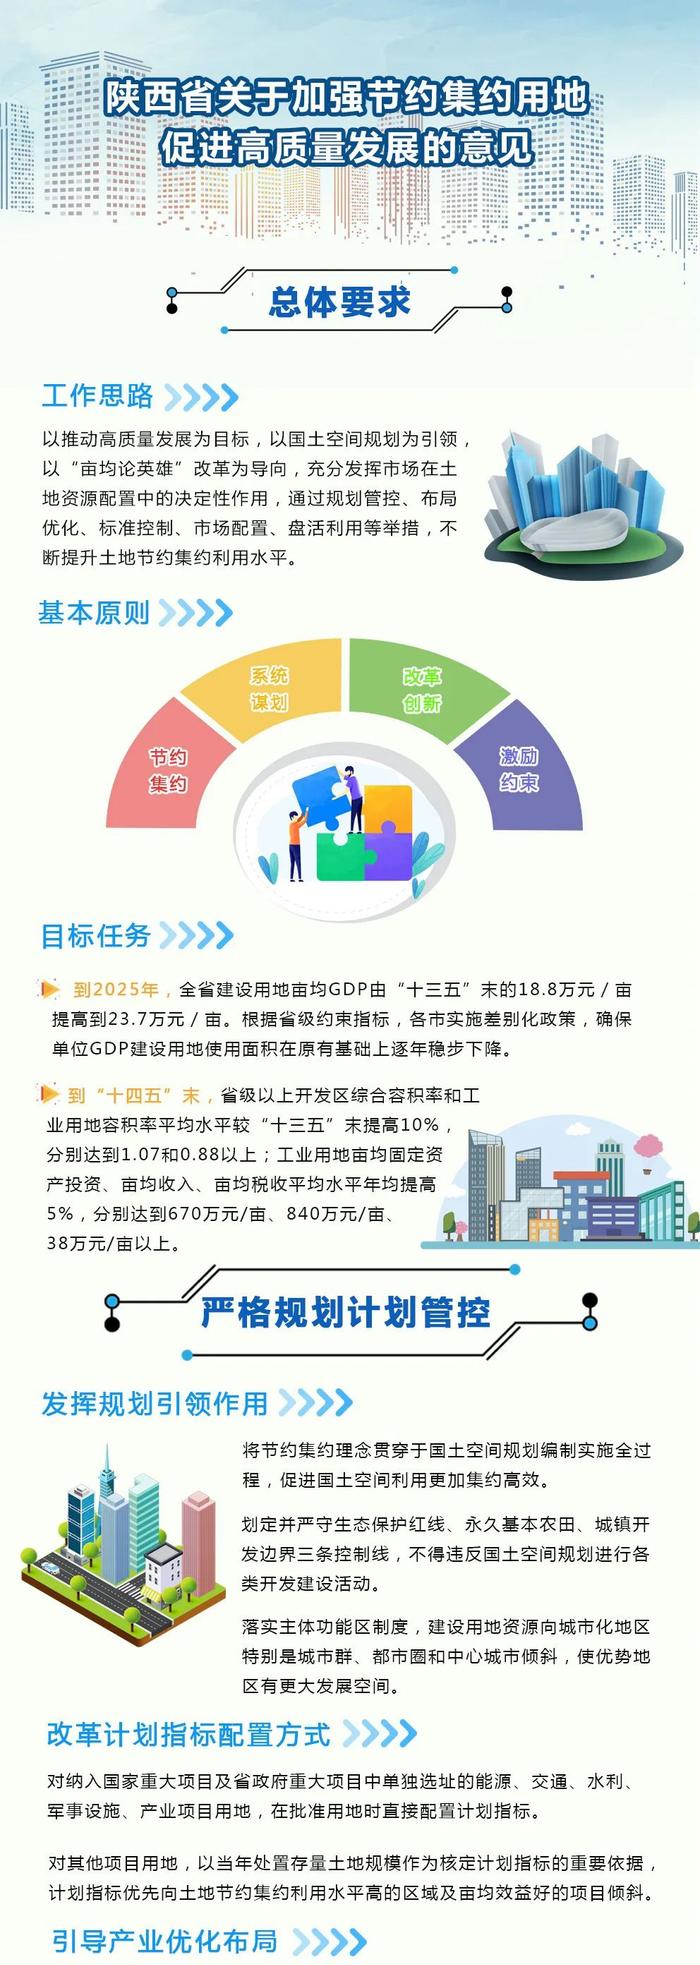 图解 |《陕西省人民政府办公厅关于加强节约集约用地促进高质量发展的意见》